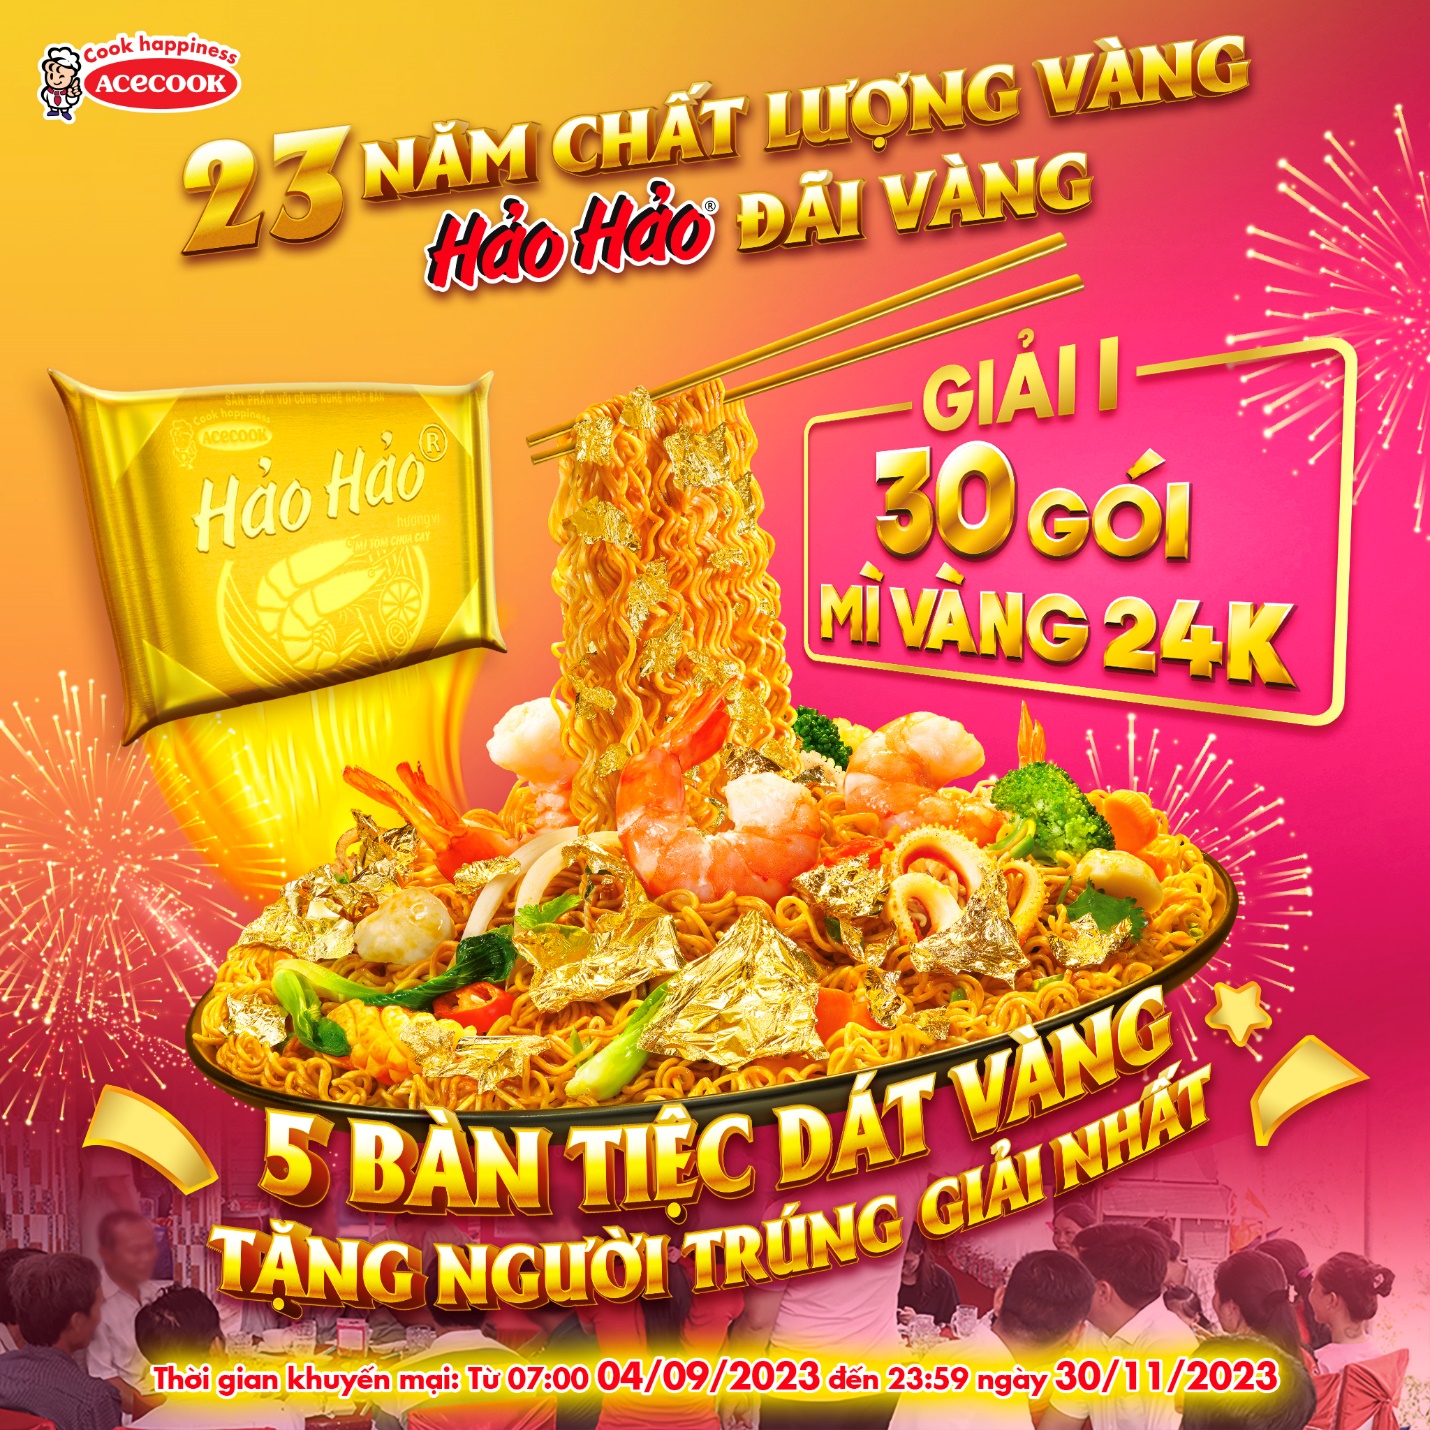 Hảo Hảo đãi vàng 24K và chảo mì dát vàng lớn nhất Việt Nam mừng sinh nhật 23 - Ảnh 2.